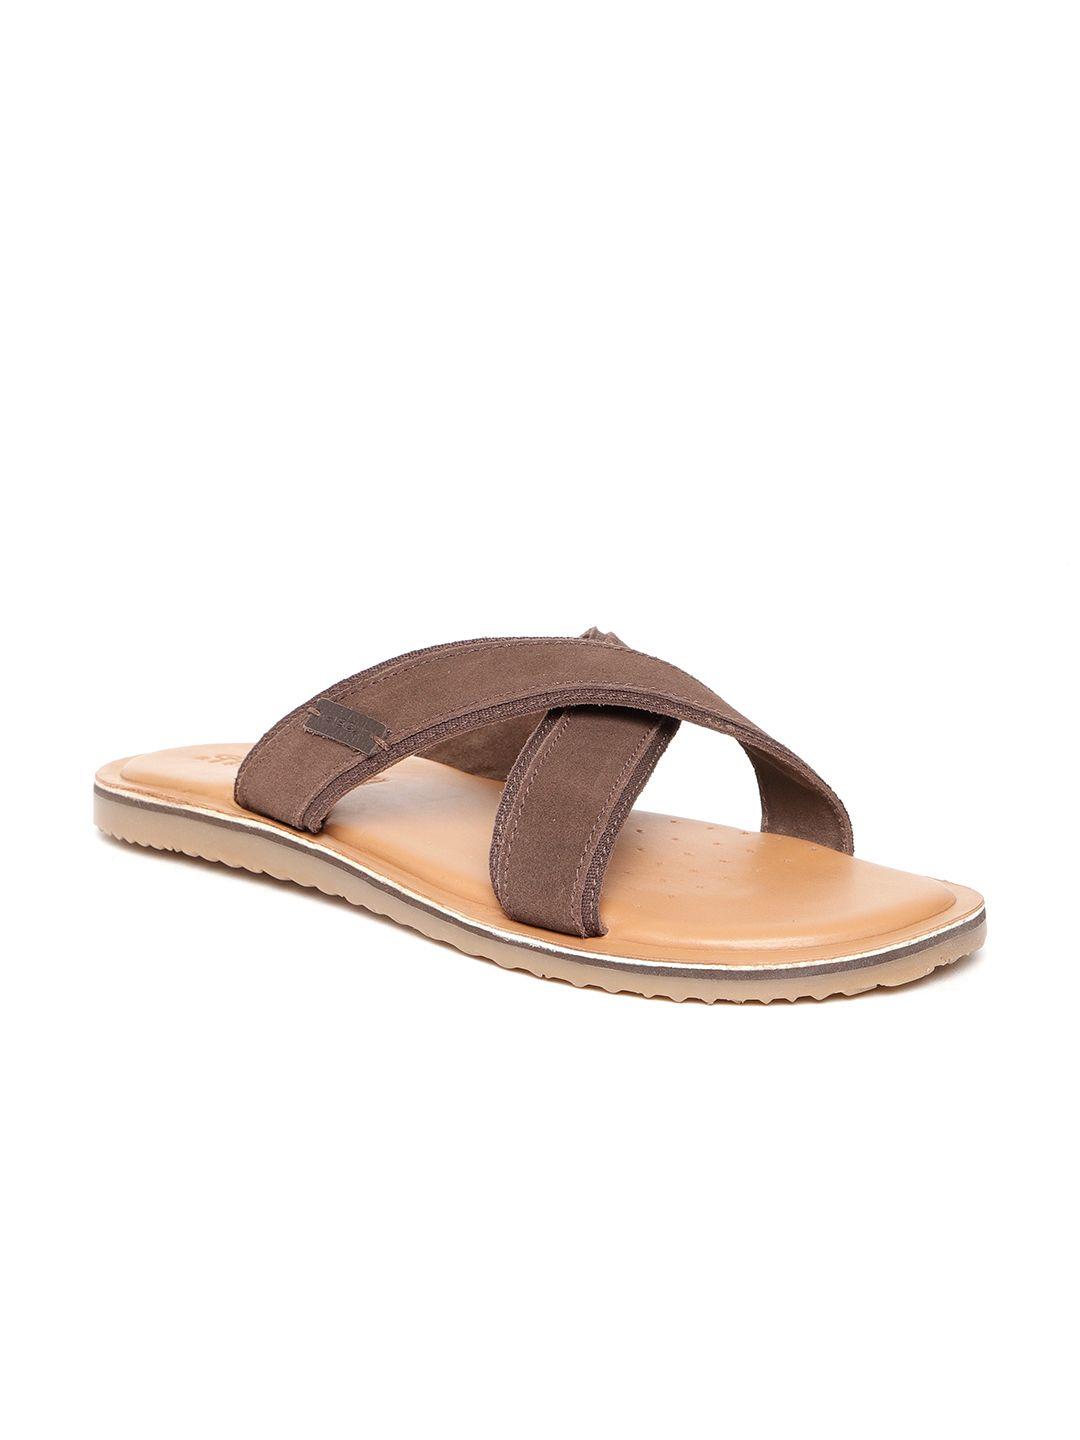 geox-men-brown-suede-comfort-sandals